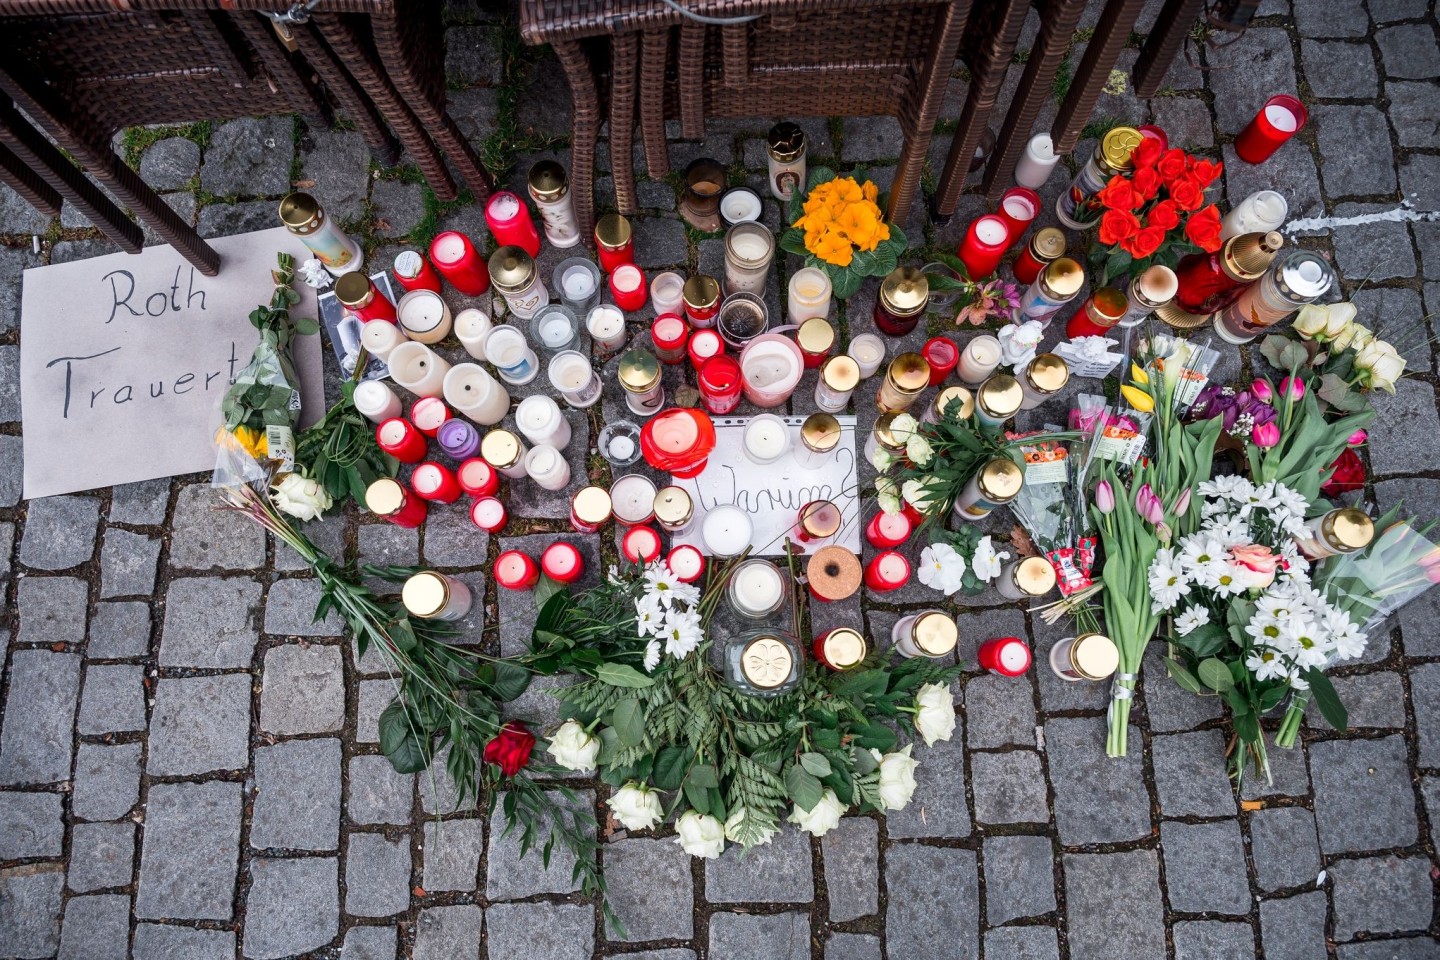 Auf dem Platz vor dem Blumengeschäft sind Blumen und Kerzen als Zeichen der Trauer niedergelegt.